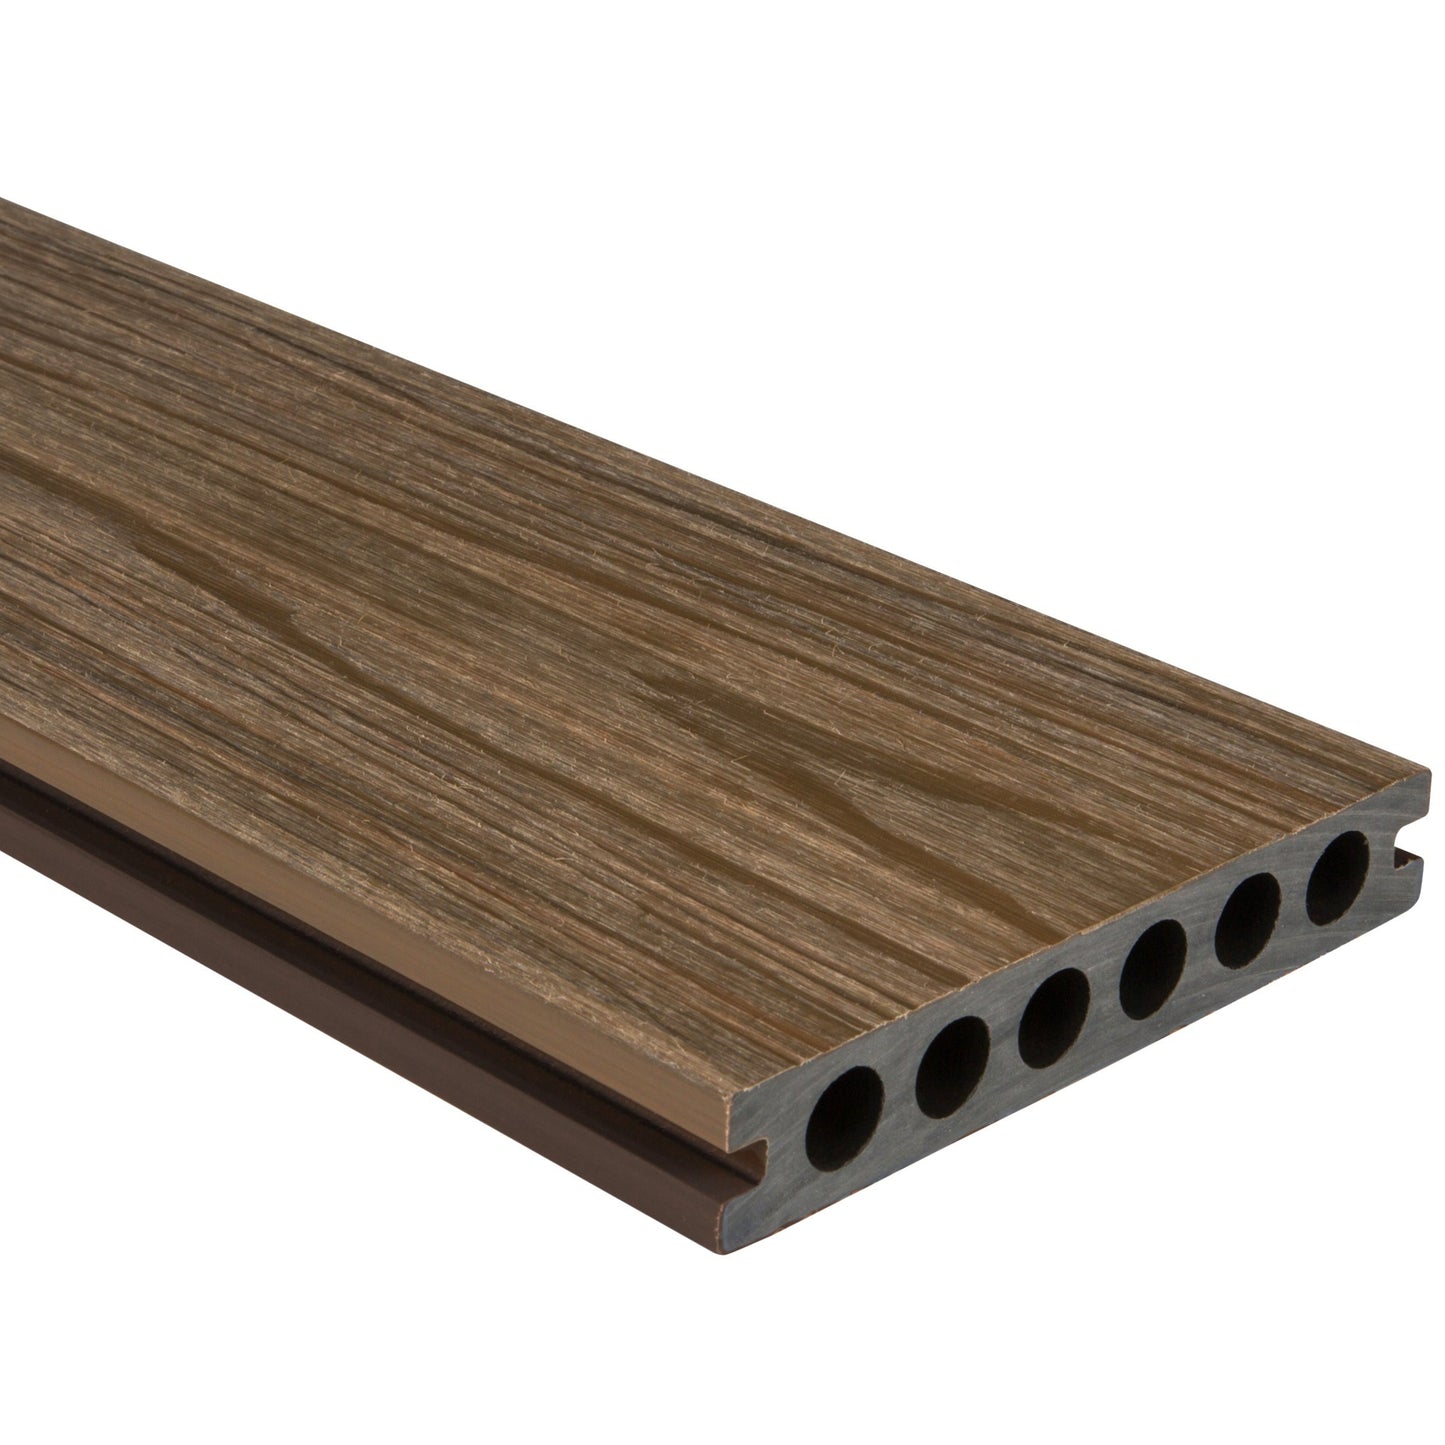 HD Deck Dual Oak/Walnut (Price per board) 22.5mm x 143mm x 3600mm